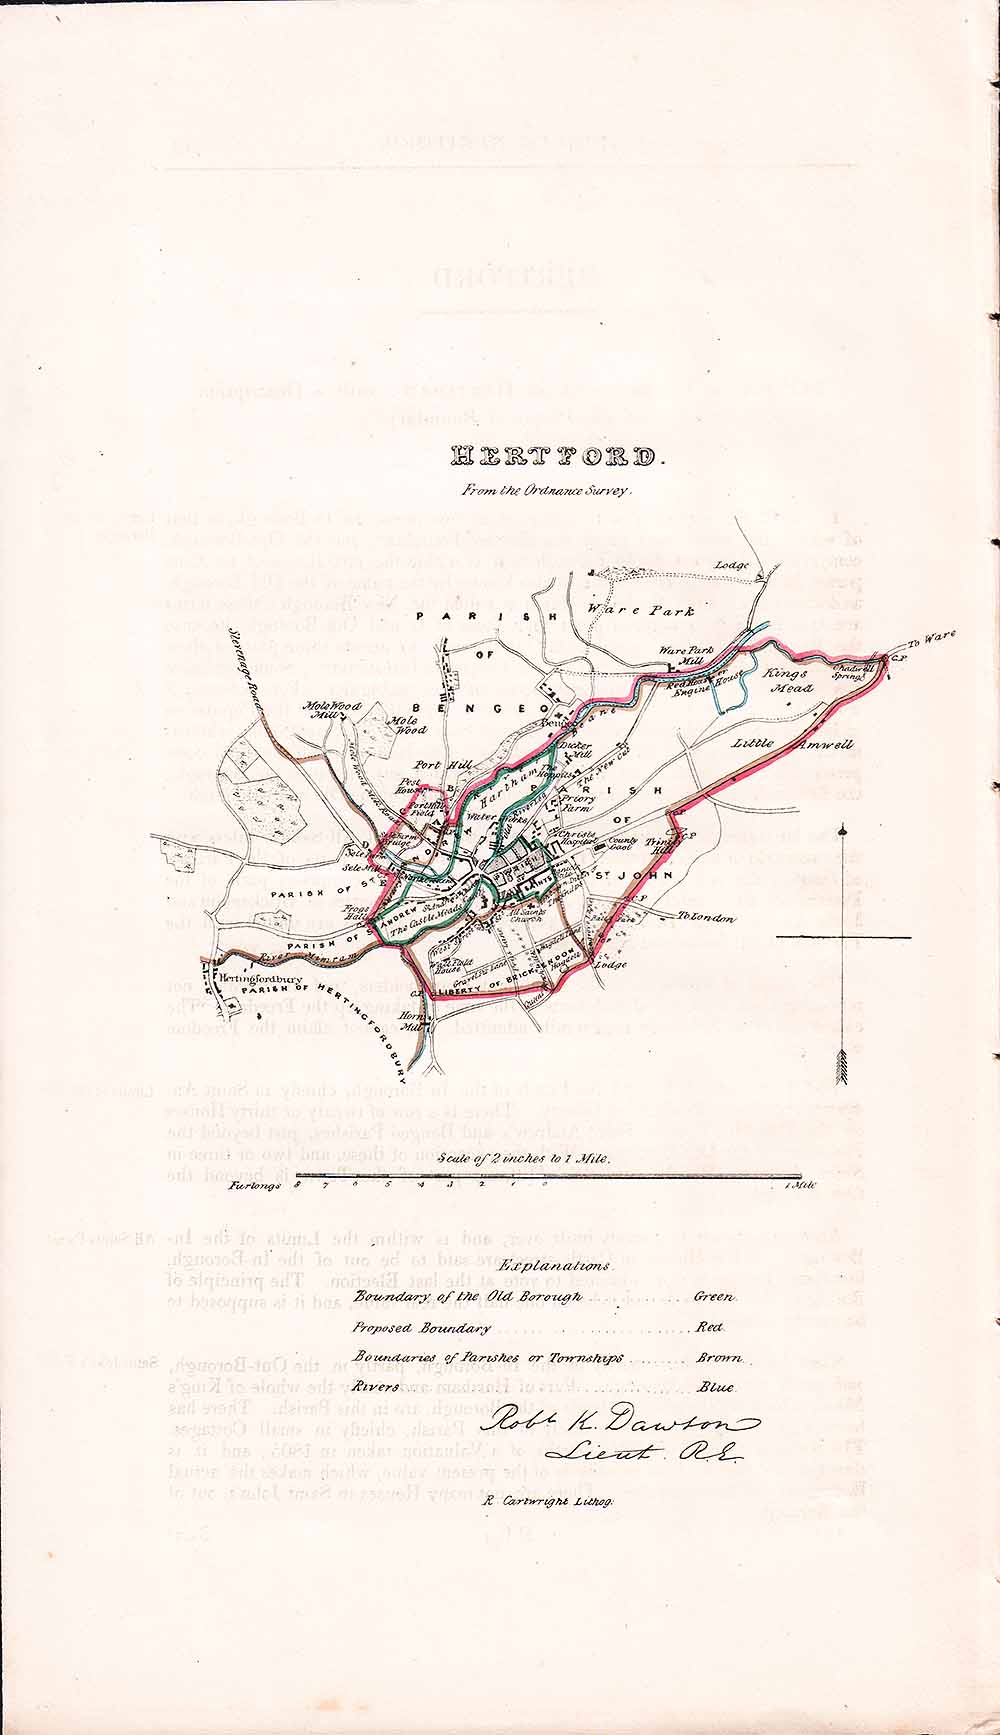 Hertford Town Plan - RK Dawson 